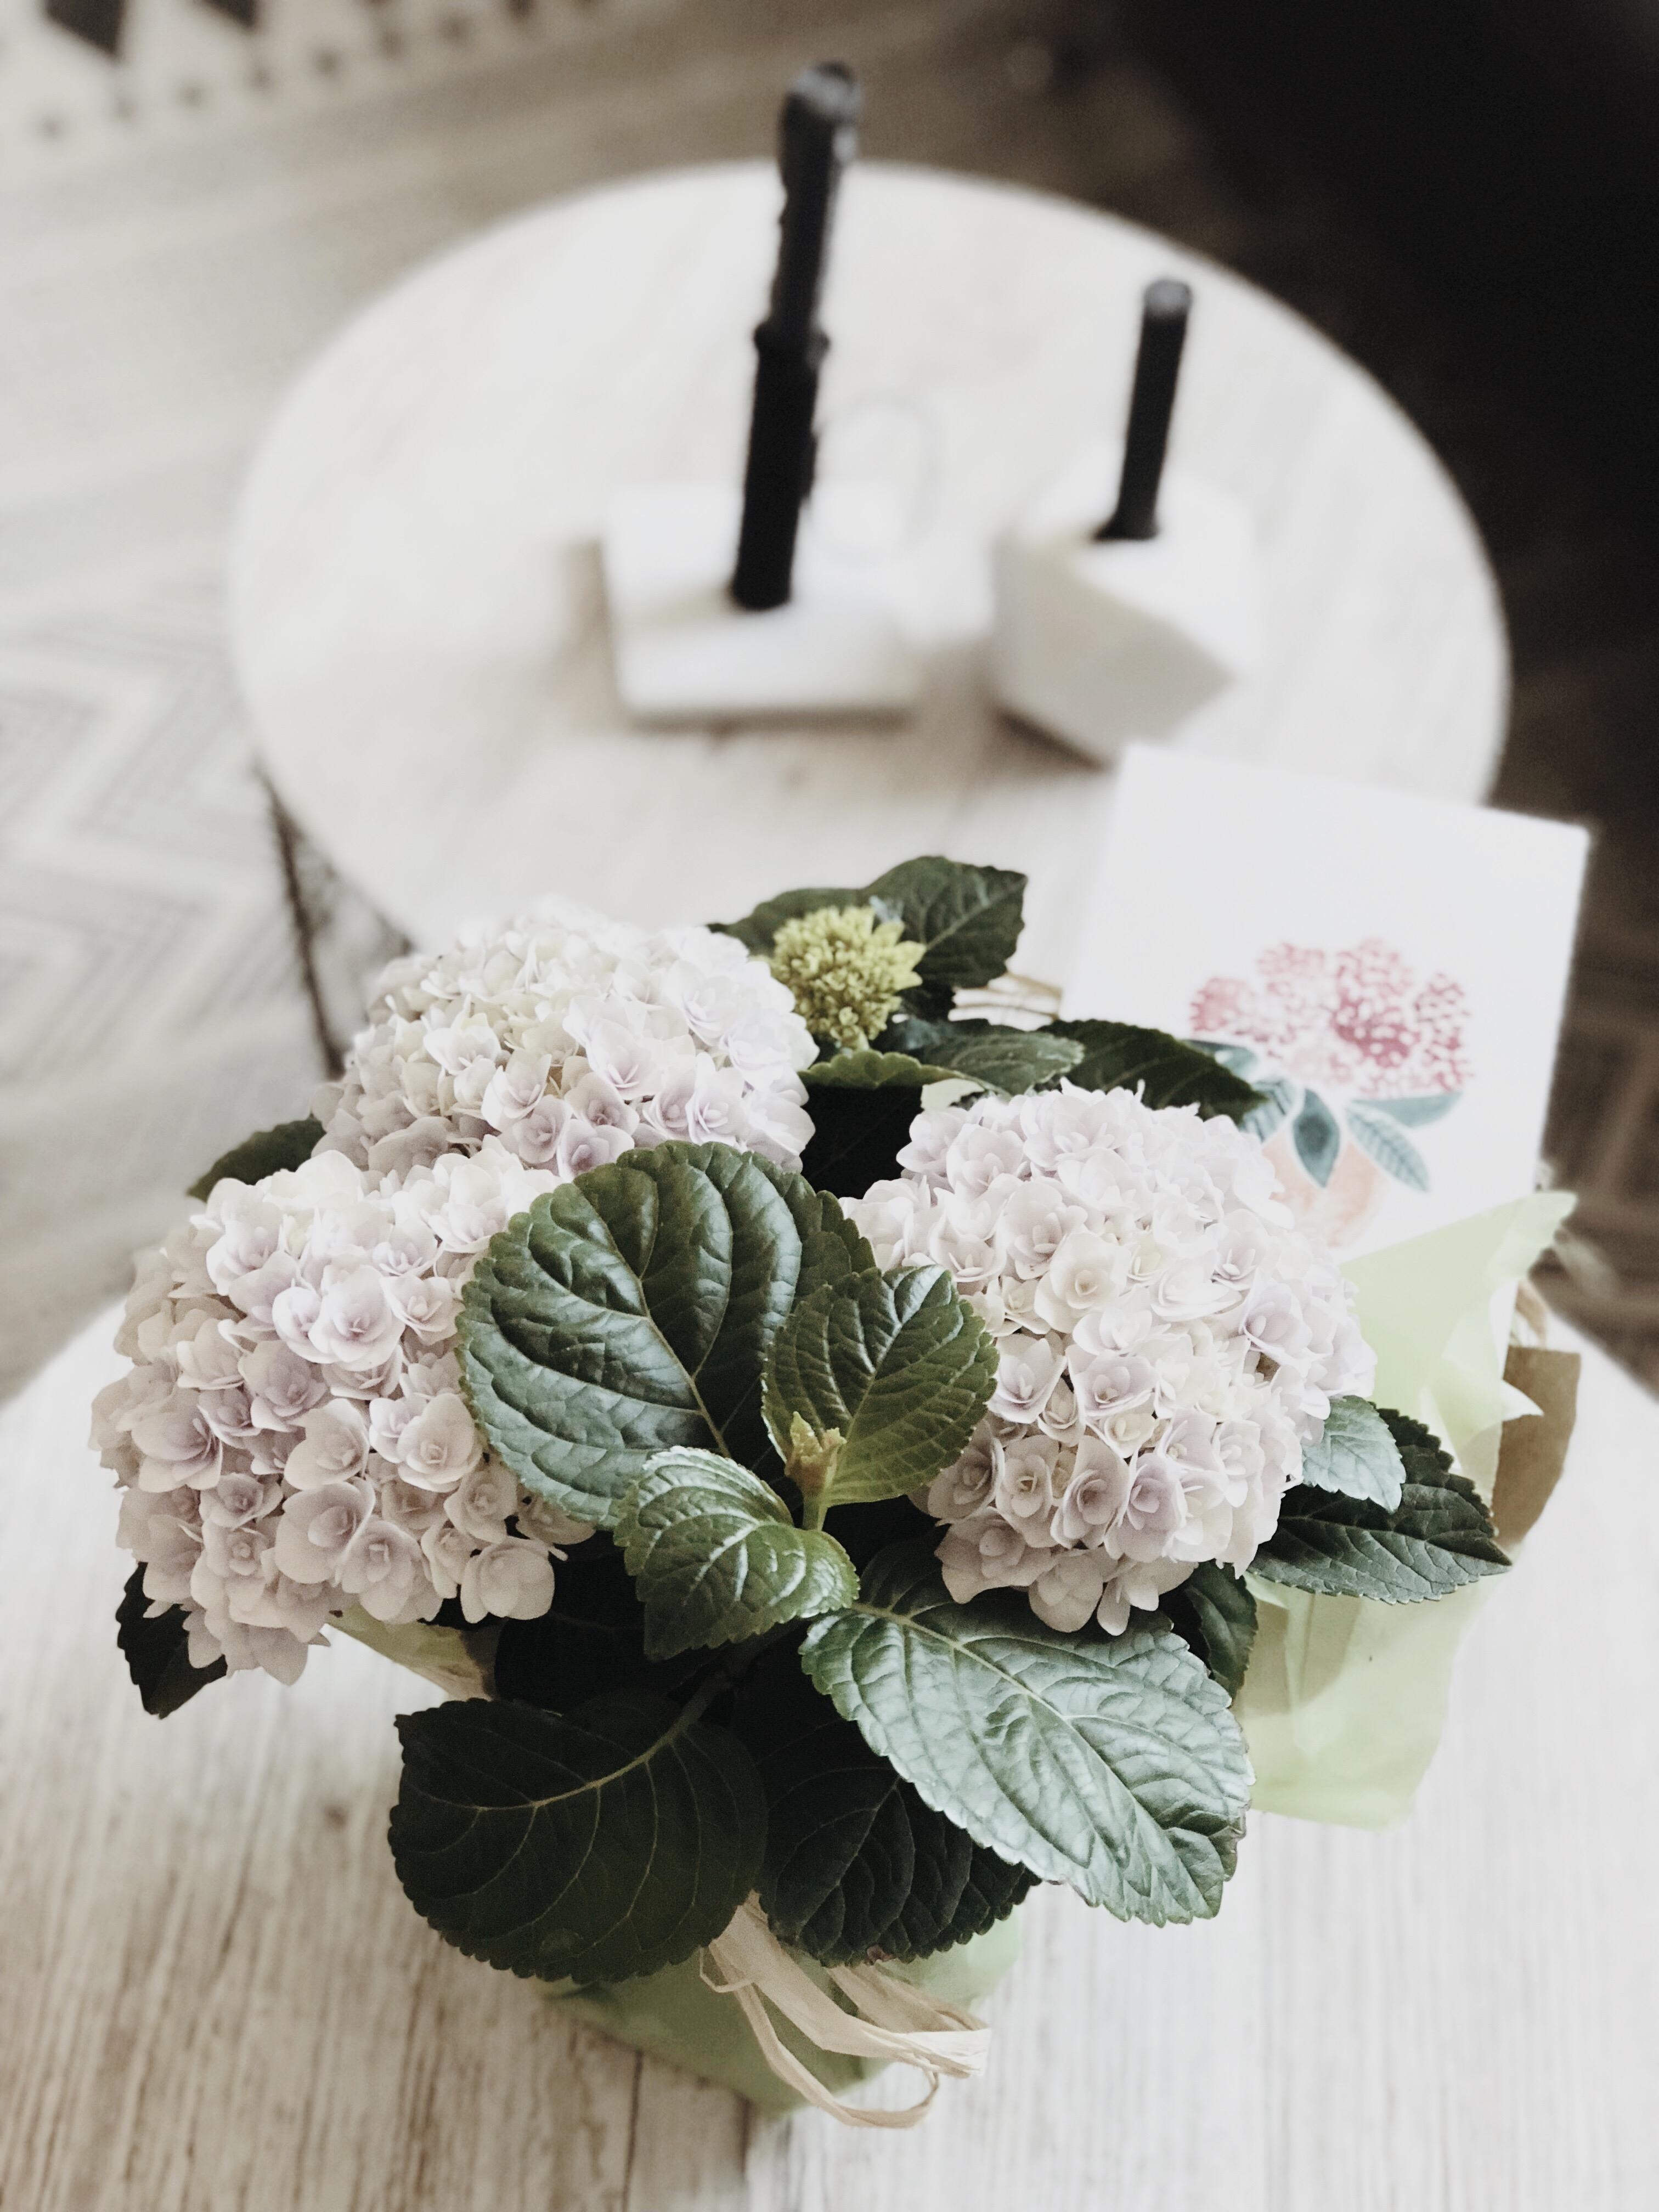 Blumengrüße vom #couchstyle Team - lieben Dank! Was für eine tolle Überraschung am Morgen! #hortensienwoche #inlove